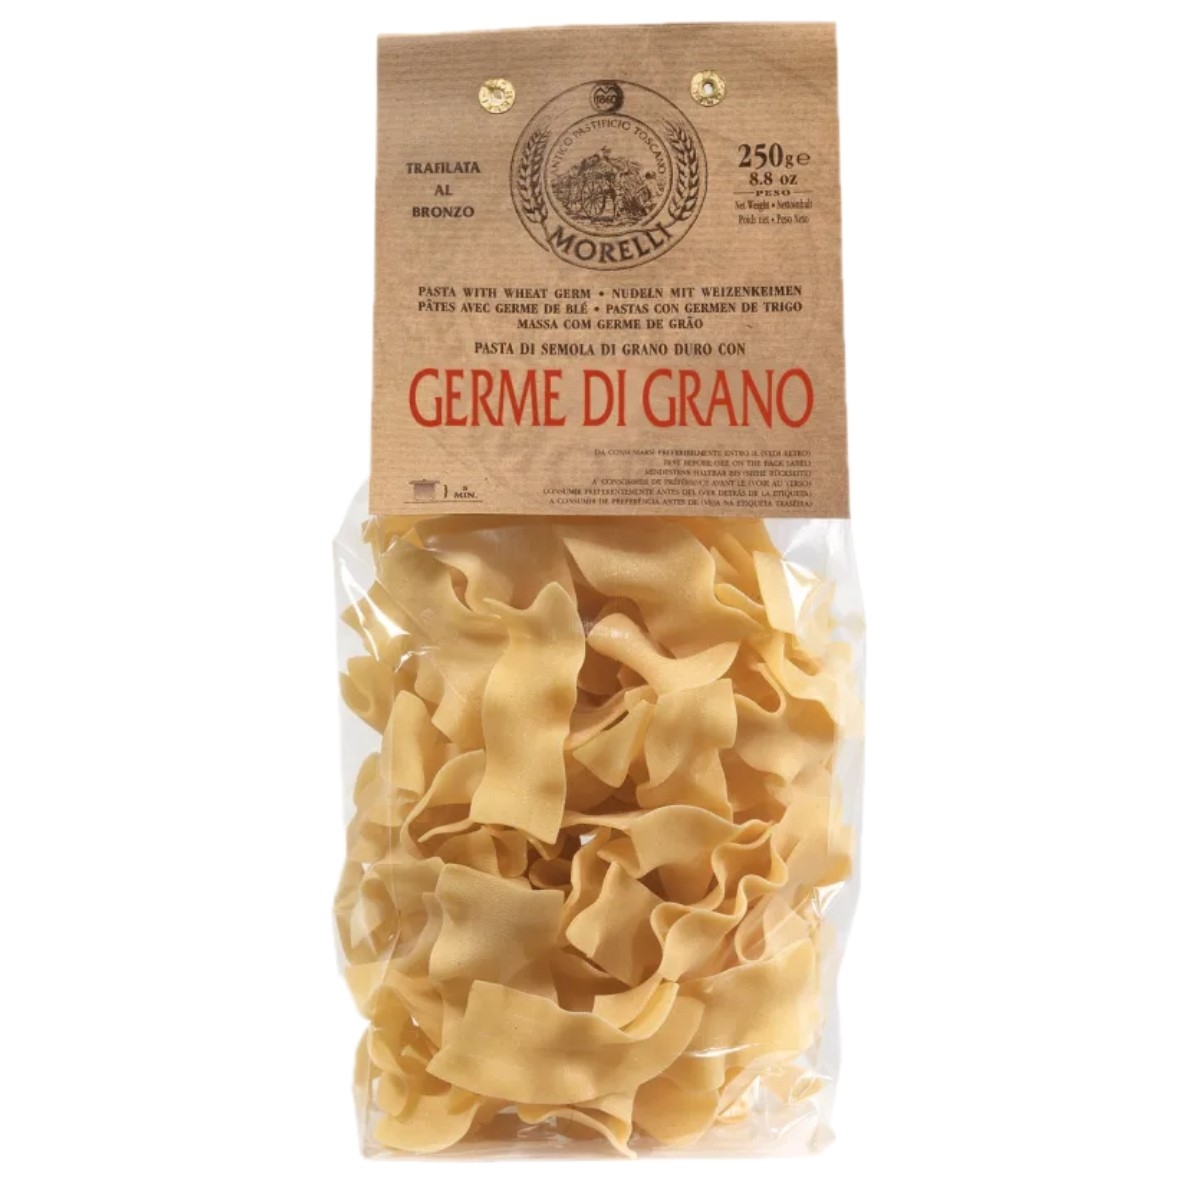 Antico Pastificio Morelli - Wheat Germ Pasta with Egg - Straccetti - 250 g